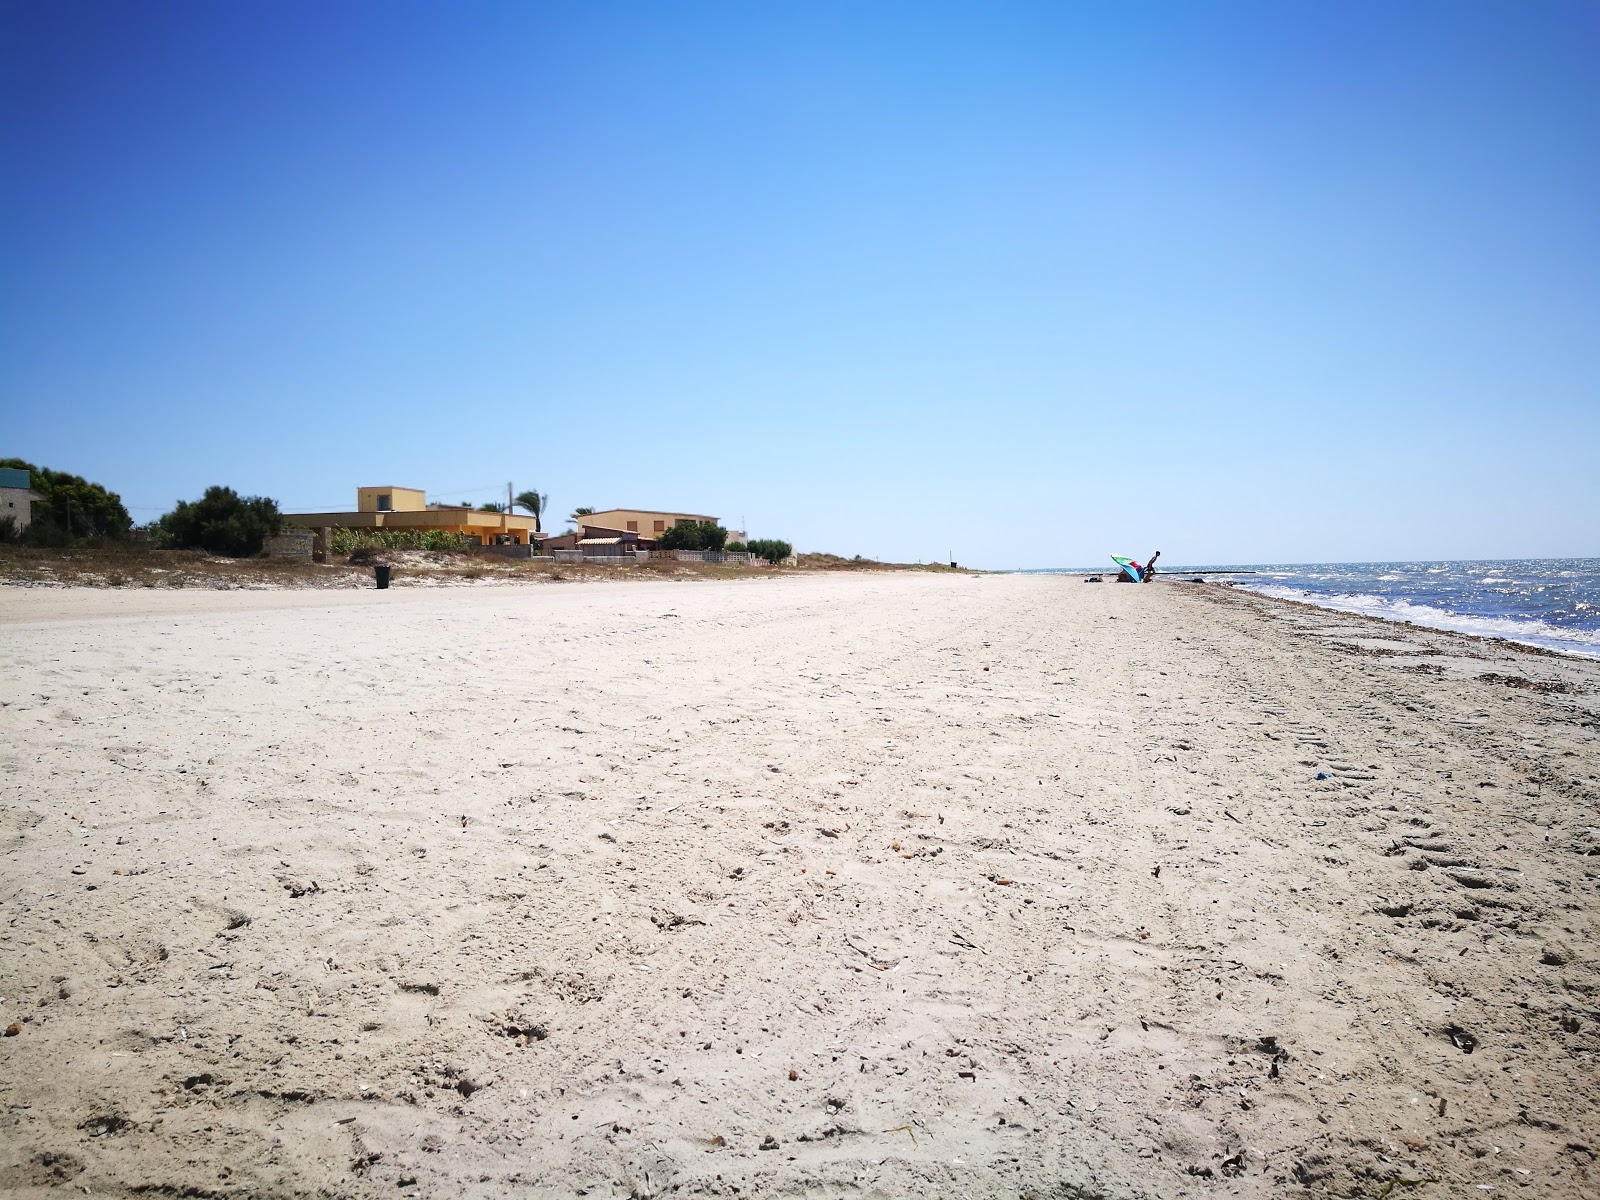 Spiaggia Marausa的照片 带有碧绿色纯水表面